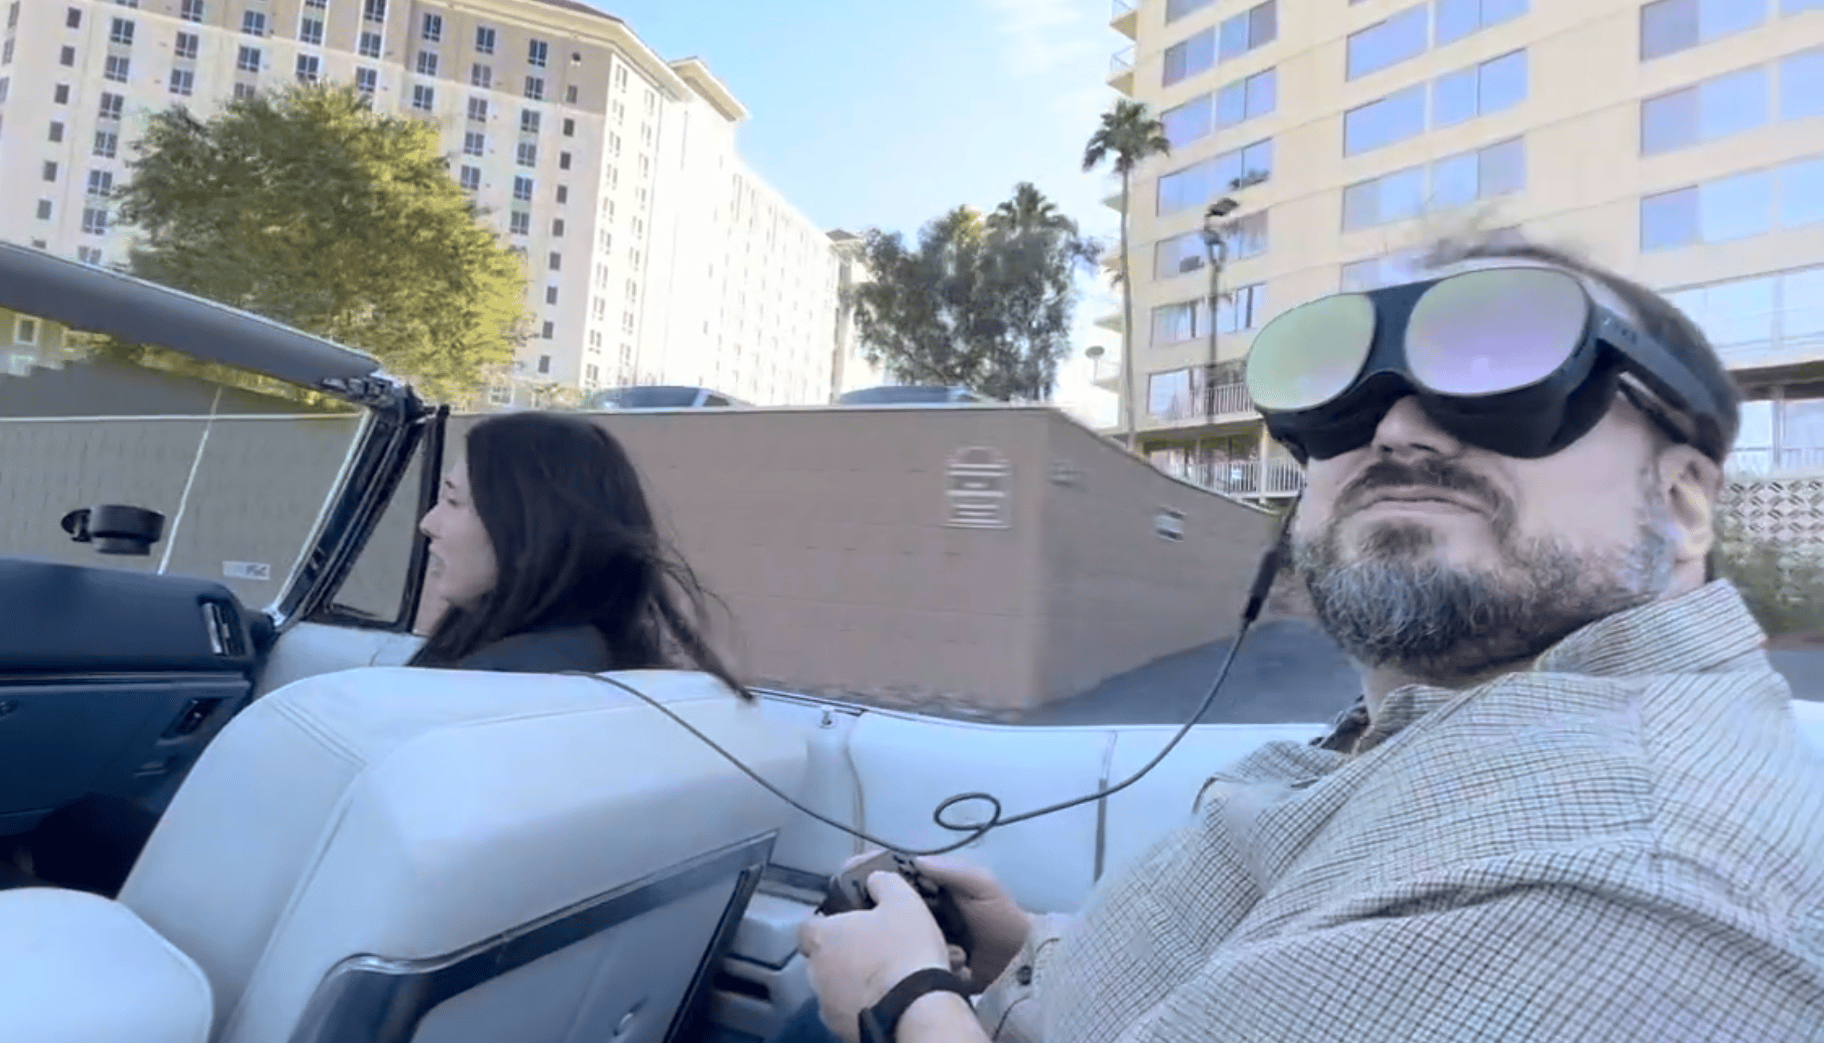 ہولورائیڈ: ہاتھ میں گیم پیڈ کے ساتھ VR میں ایک آرام دہ سواری۔